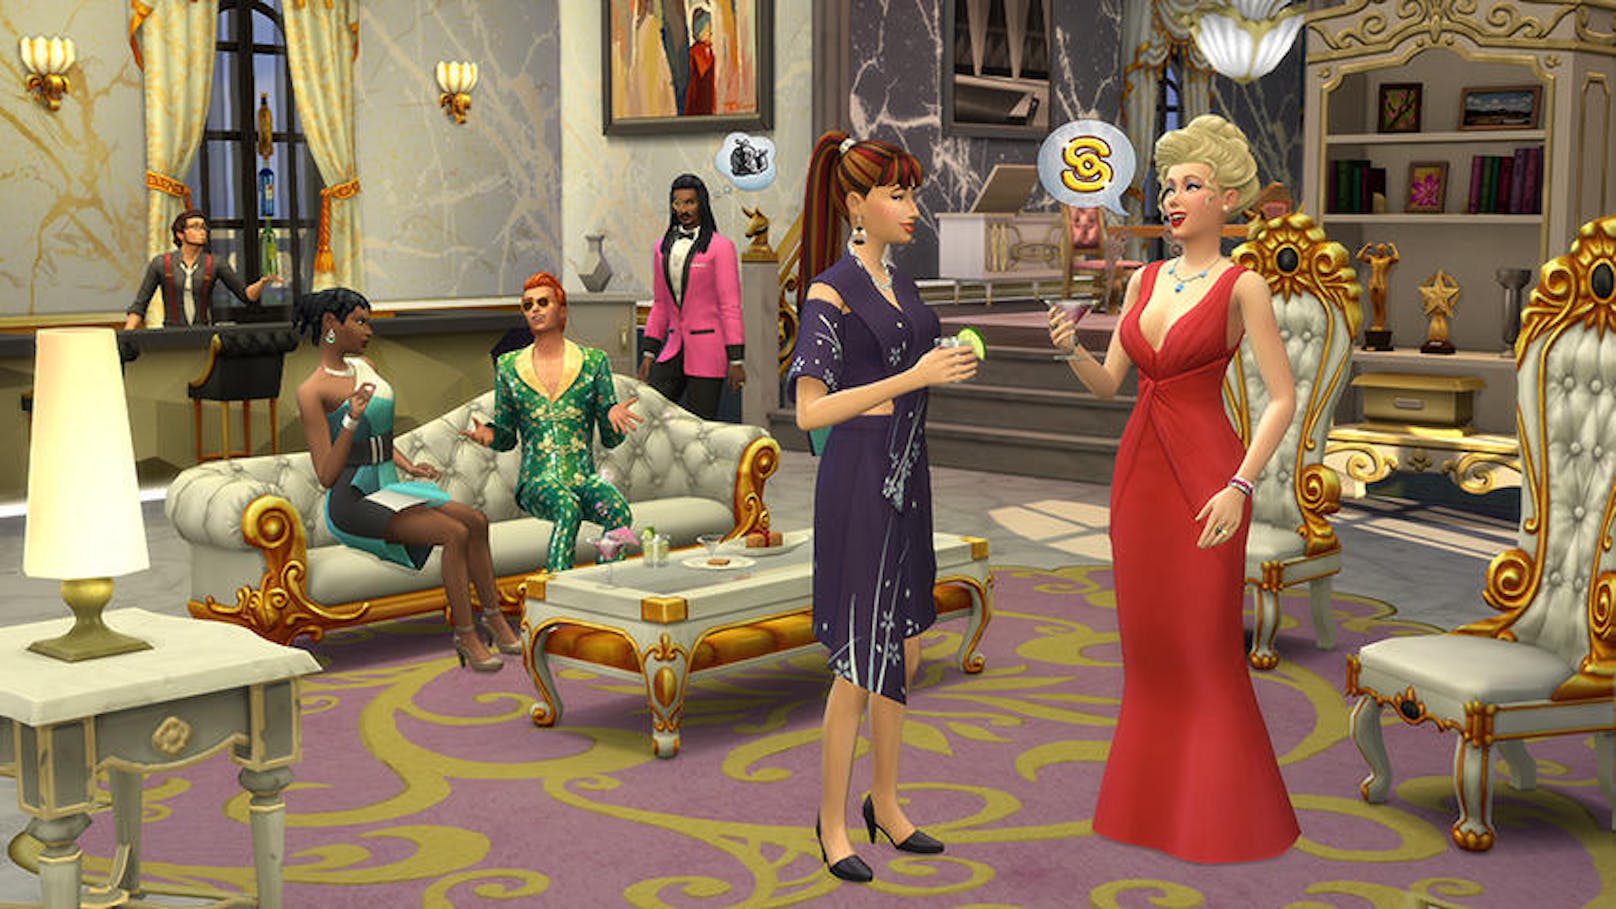 Die Sims 4: Werde berühmt ist jetzt für PC und Mac erhältlich. Mit diesem Erweiterungspack können Spieler die wildesten Träume ihrer Sims von Ruhm und Reichtum wahr werden lassen, indem diese zum A-Promi werden, in der neuen Schauspielkarriere Starruhm genießen oder z.B. als Küchenchef oder Musiker weltweite Anerkennung ernten. In der neuen Glitzerwelt von Del Sol Valley kleiden Spieler ihre Sims in Designermode, lassen sie an VIP-Partys teilnehmen und in glamourösen Villen mit prachtvoller Einrichtung wie einer goldenen Toilette oder einer Schlafkapsel residieren.